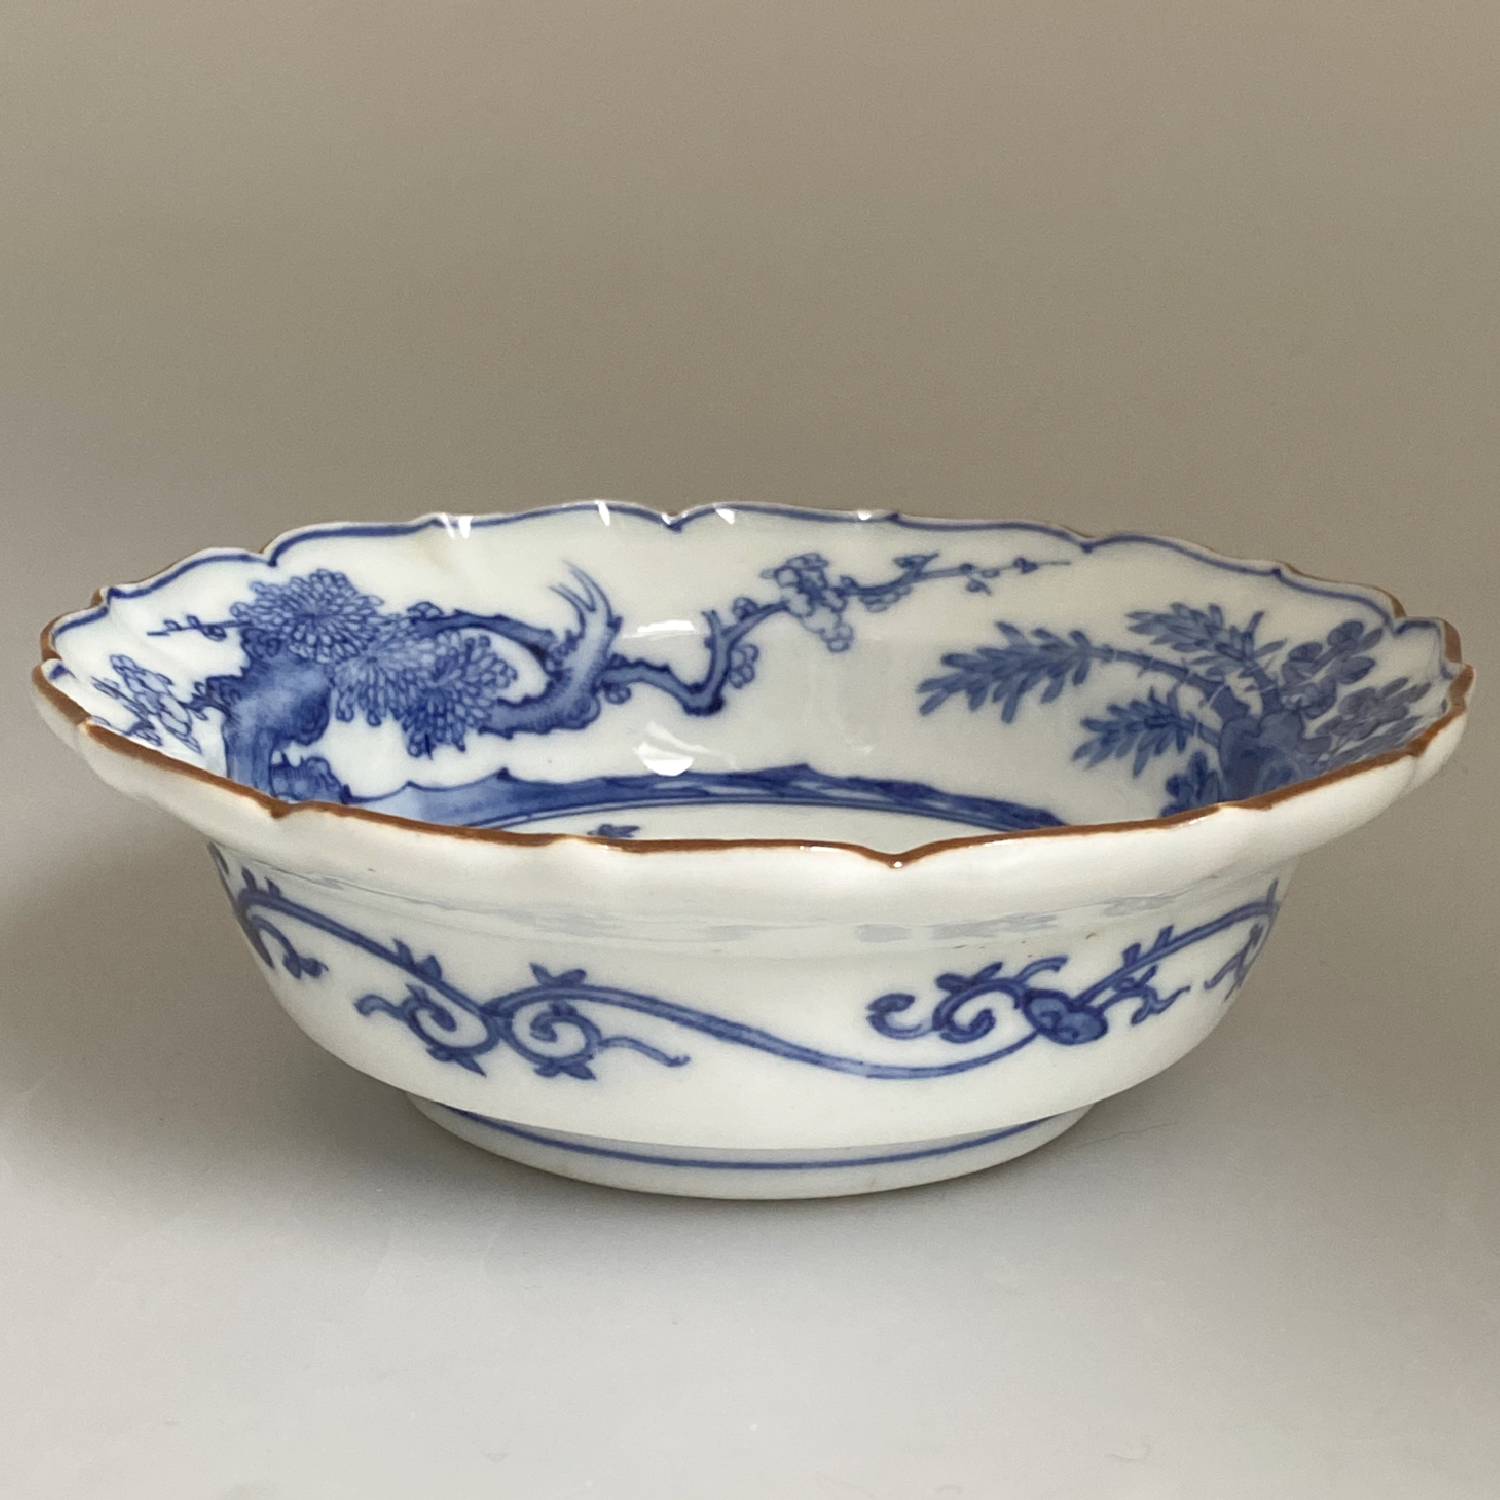 Japon, Coupe en porcelaine de Arita c.1690 - 1740